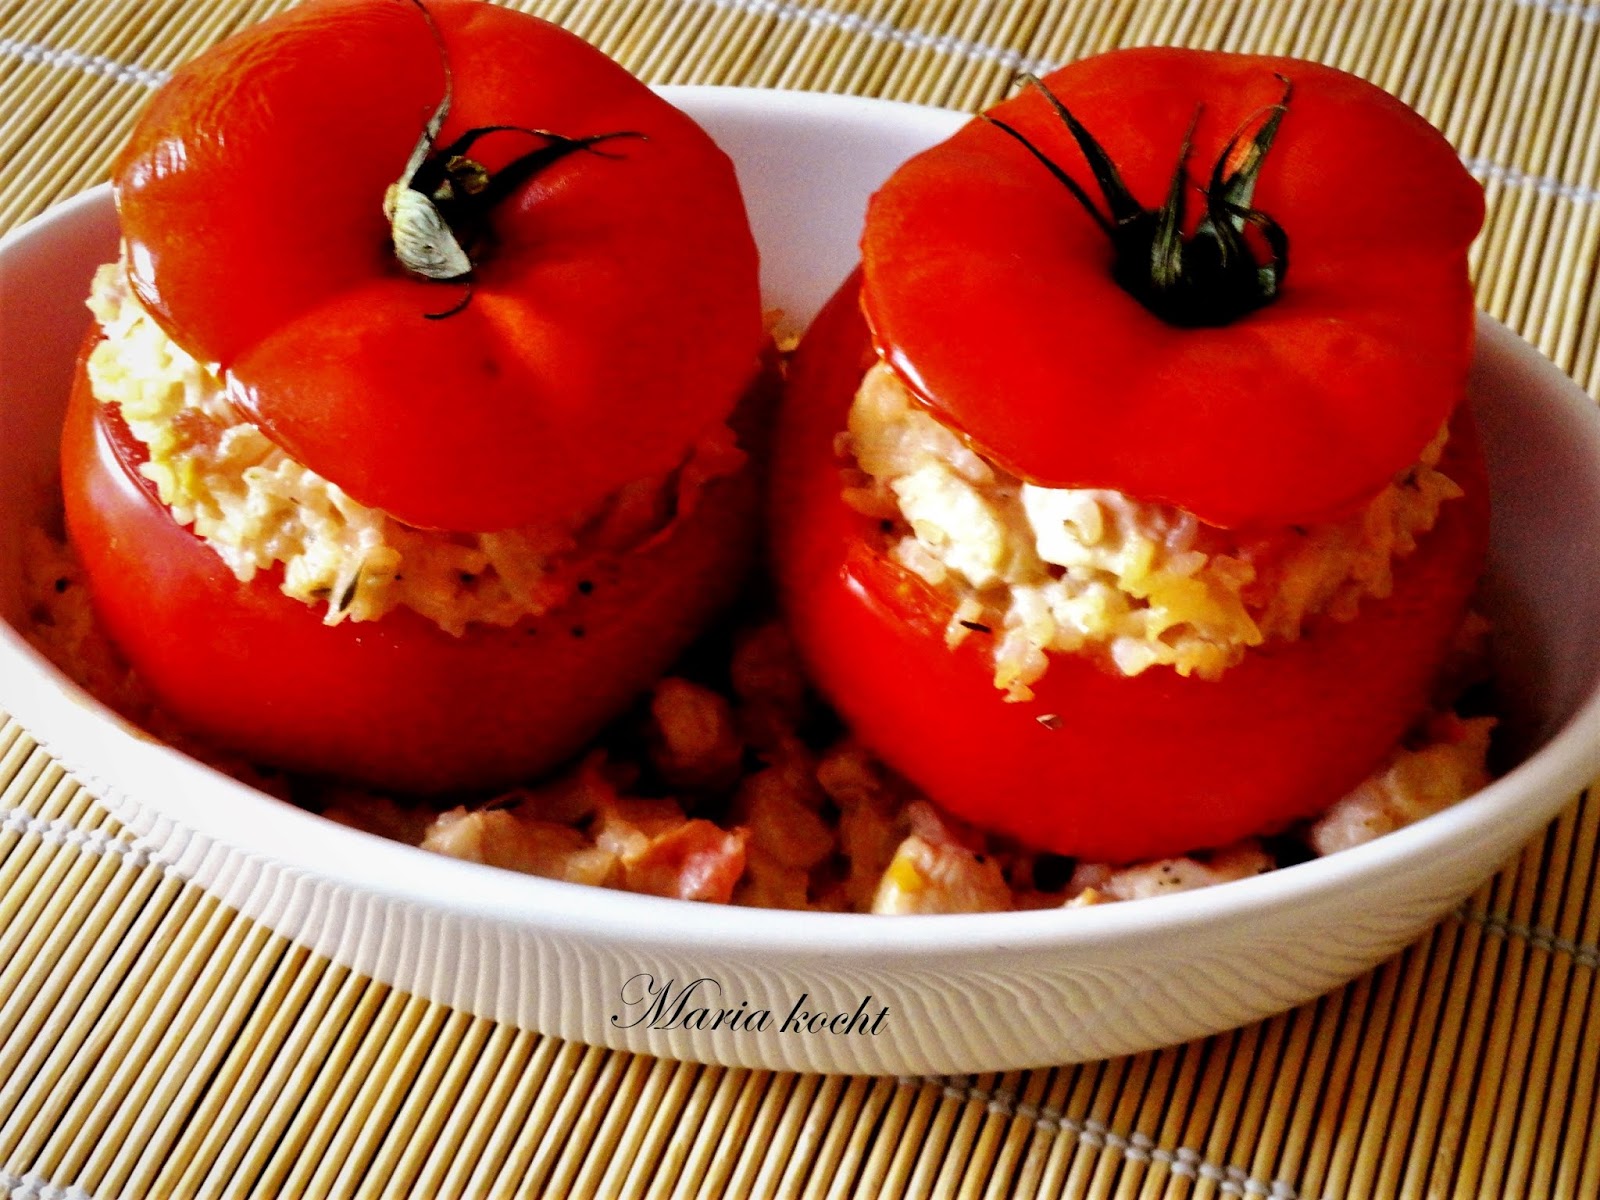 Maria kocht: Gefüllte Tomaten mit Hähnchenbrust / Csirkemellel töltött ...